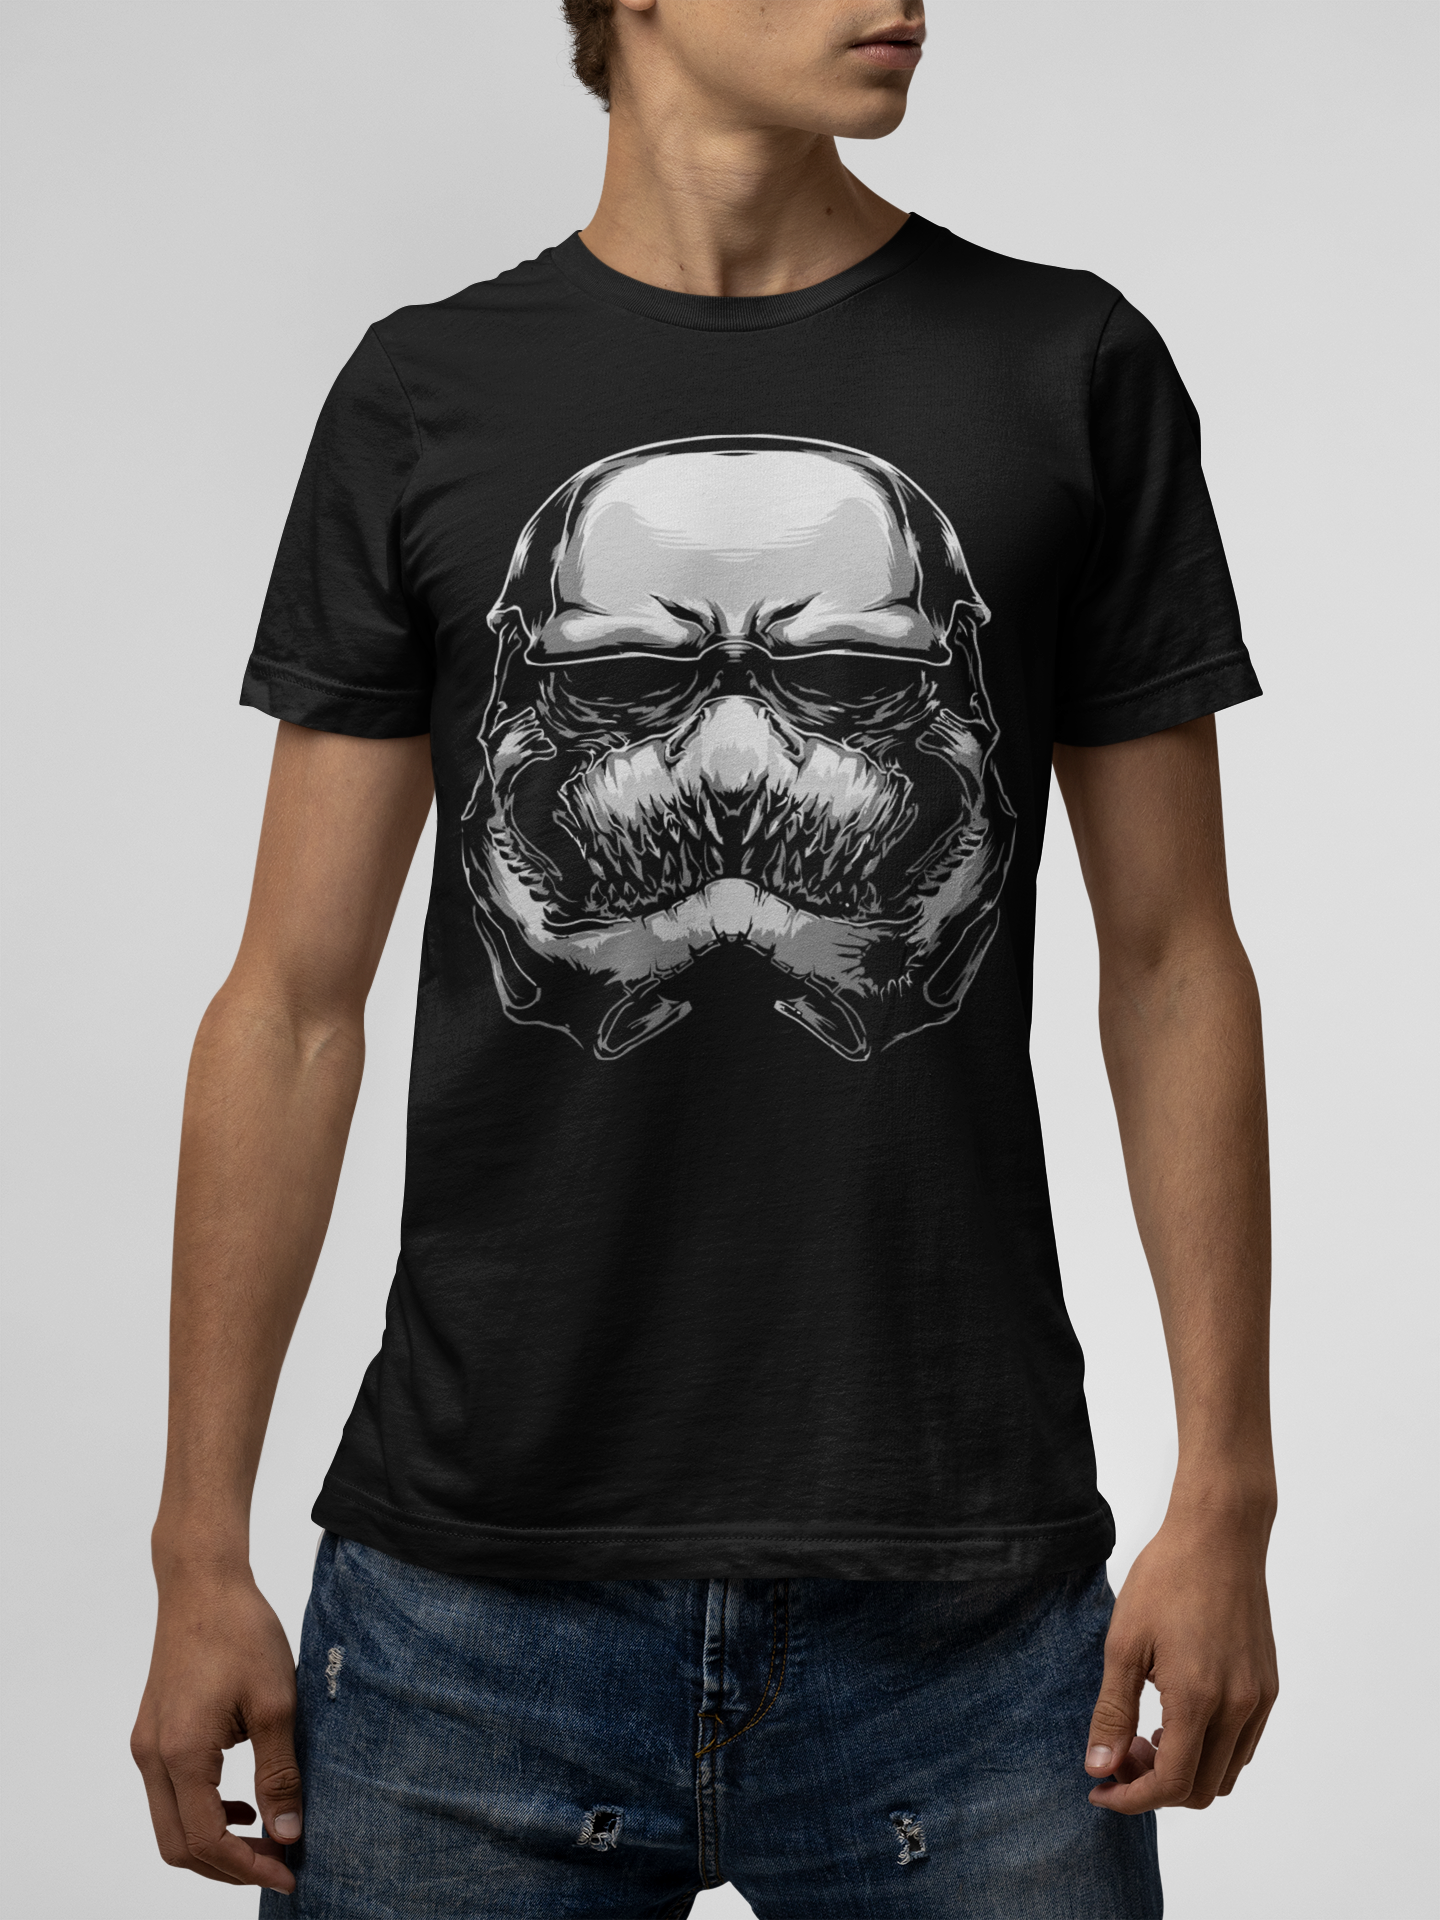 Monster Head Black T-Shirt For Men